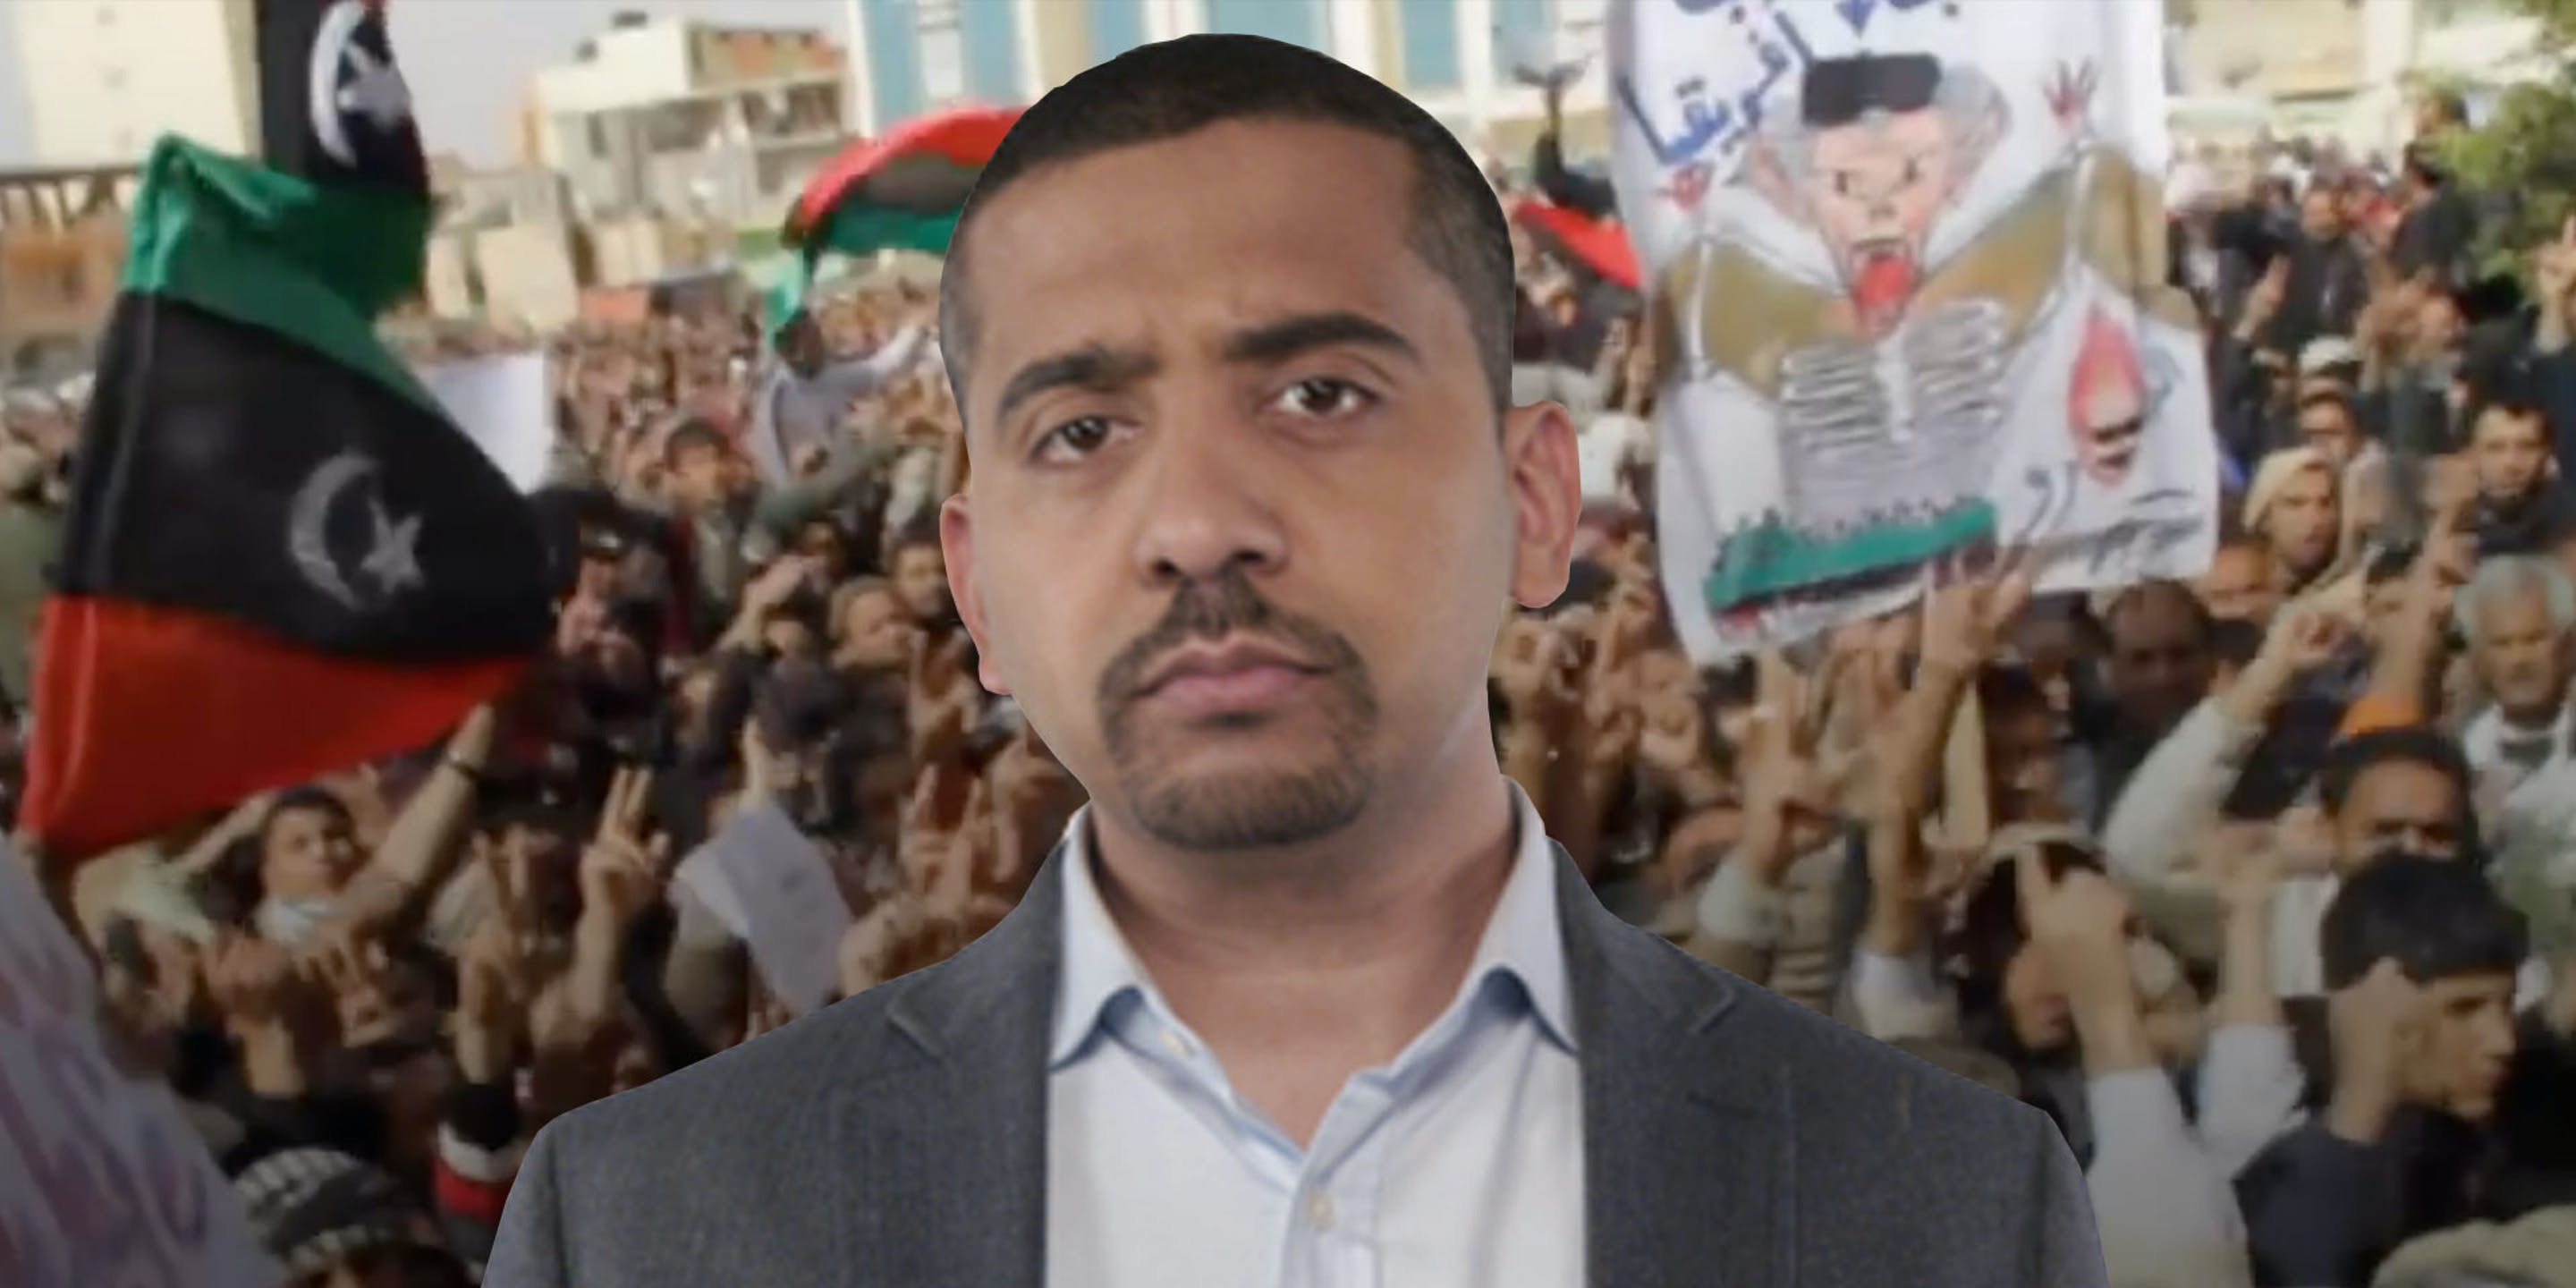 加沙地带死亡人数已达2万 哈马斯领导人赴埃及磋商停火等问题 - 国际 - 中工网